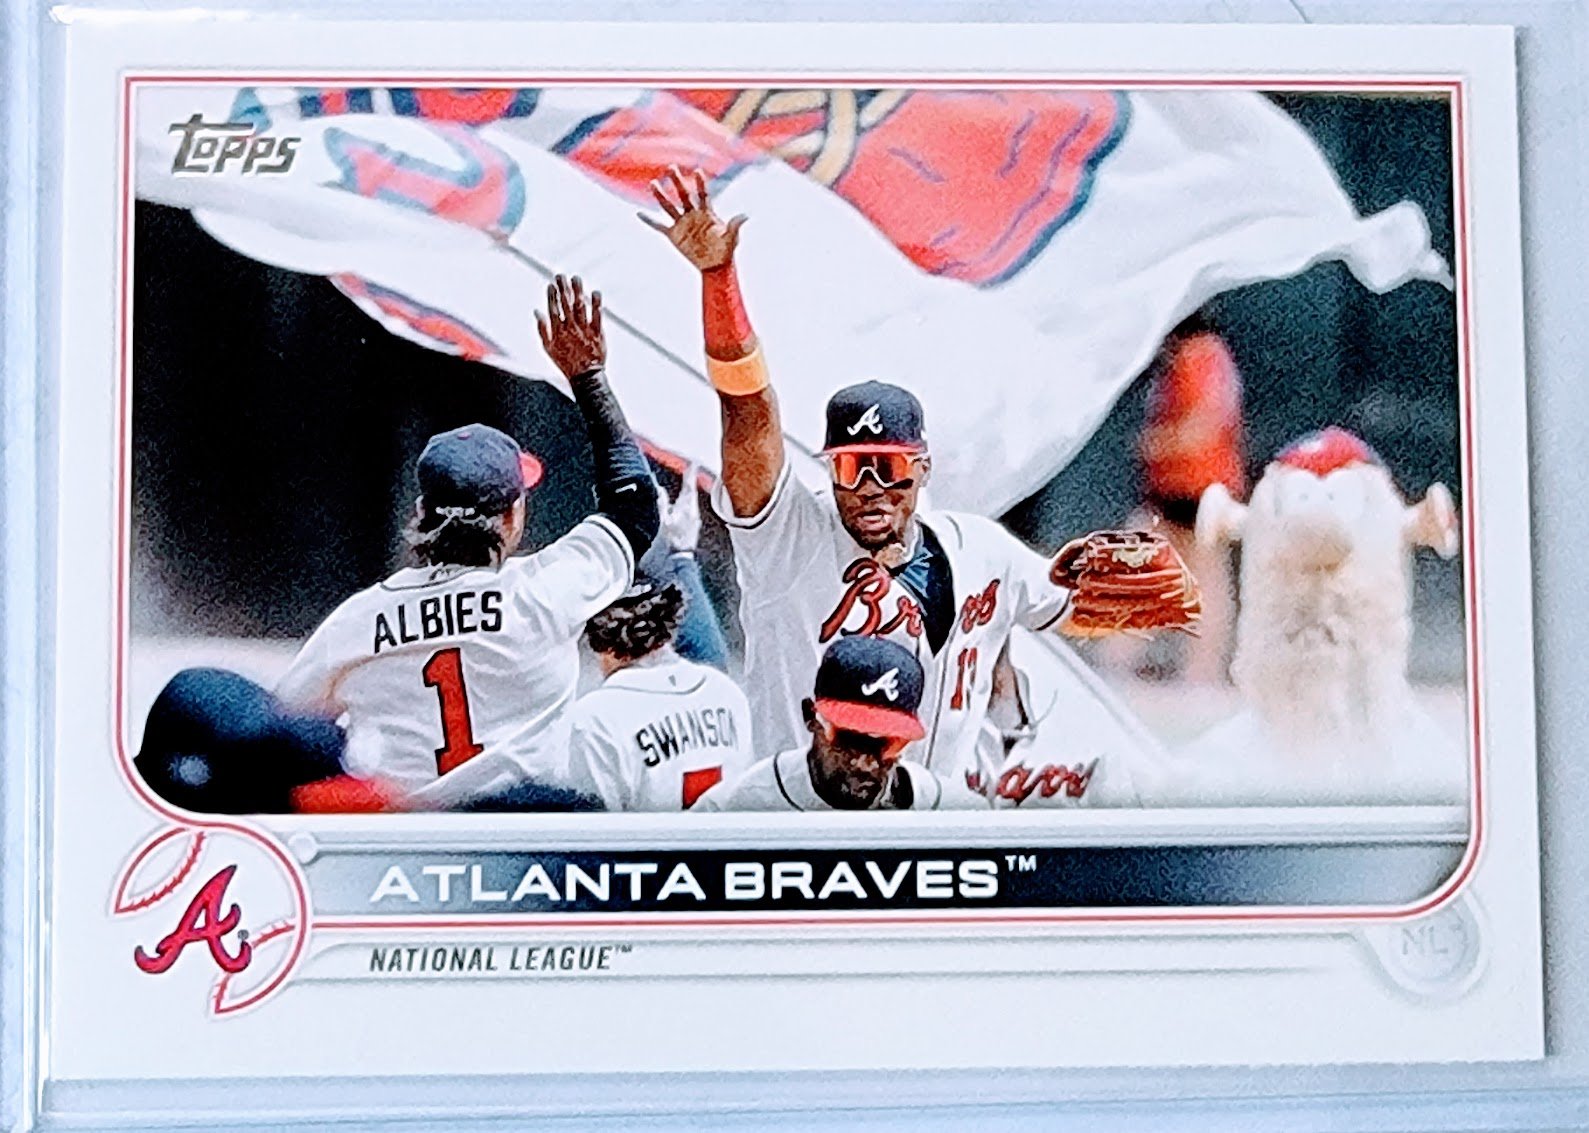 2022 Topps Atlanta Braves Team Baseball Trading Card